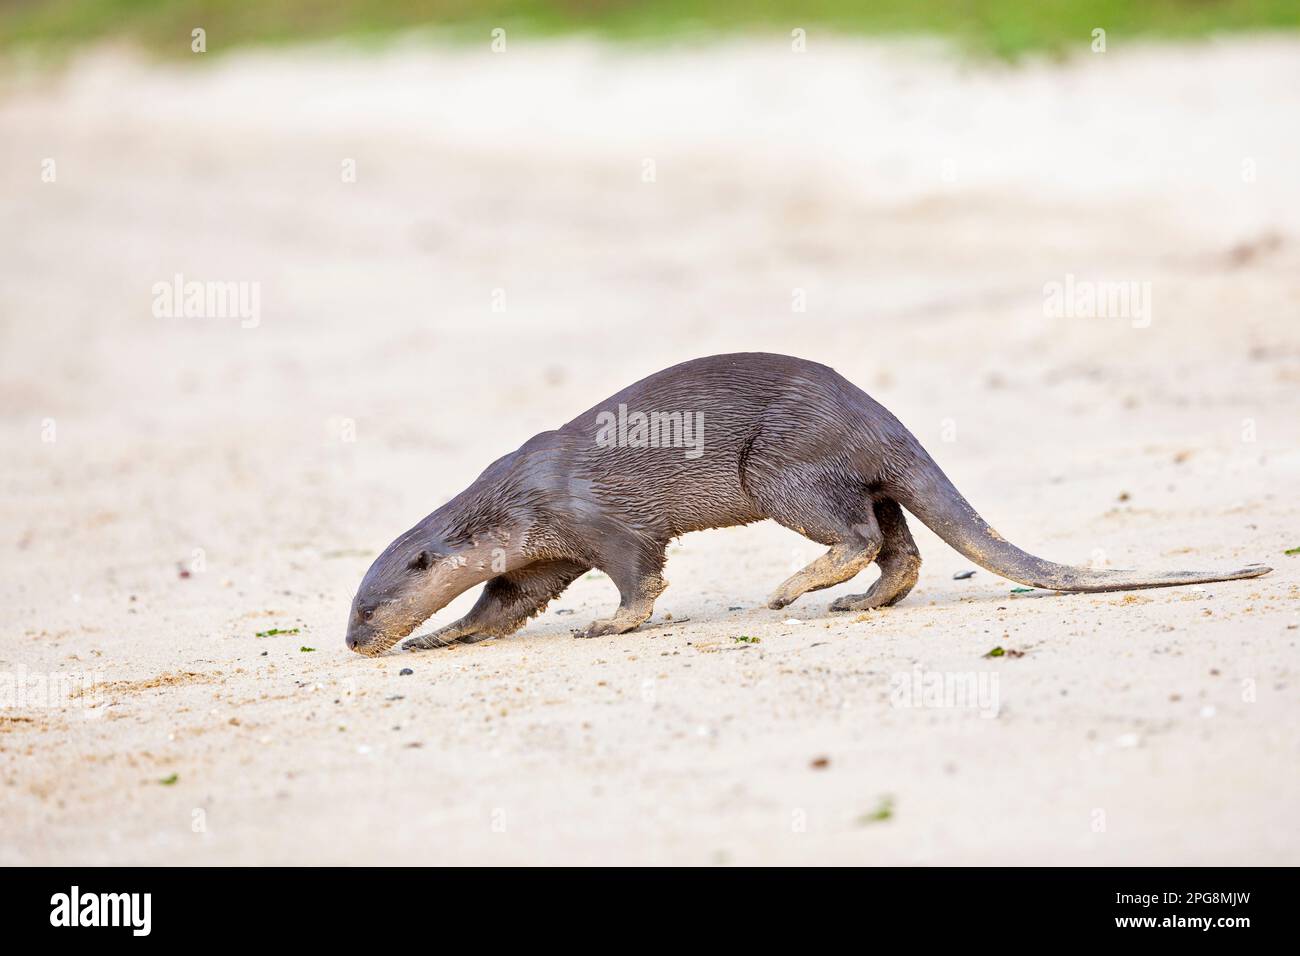 Una lontra rivestita liscia che controlla il profumo lasciato nella sabbia di una spiaggia come parte del comportamento territoriale, Singapore. Foto Stock